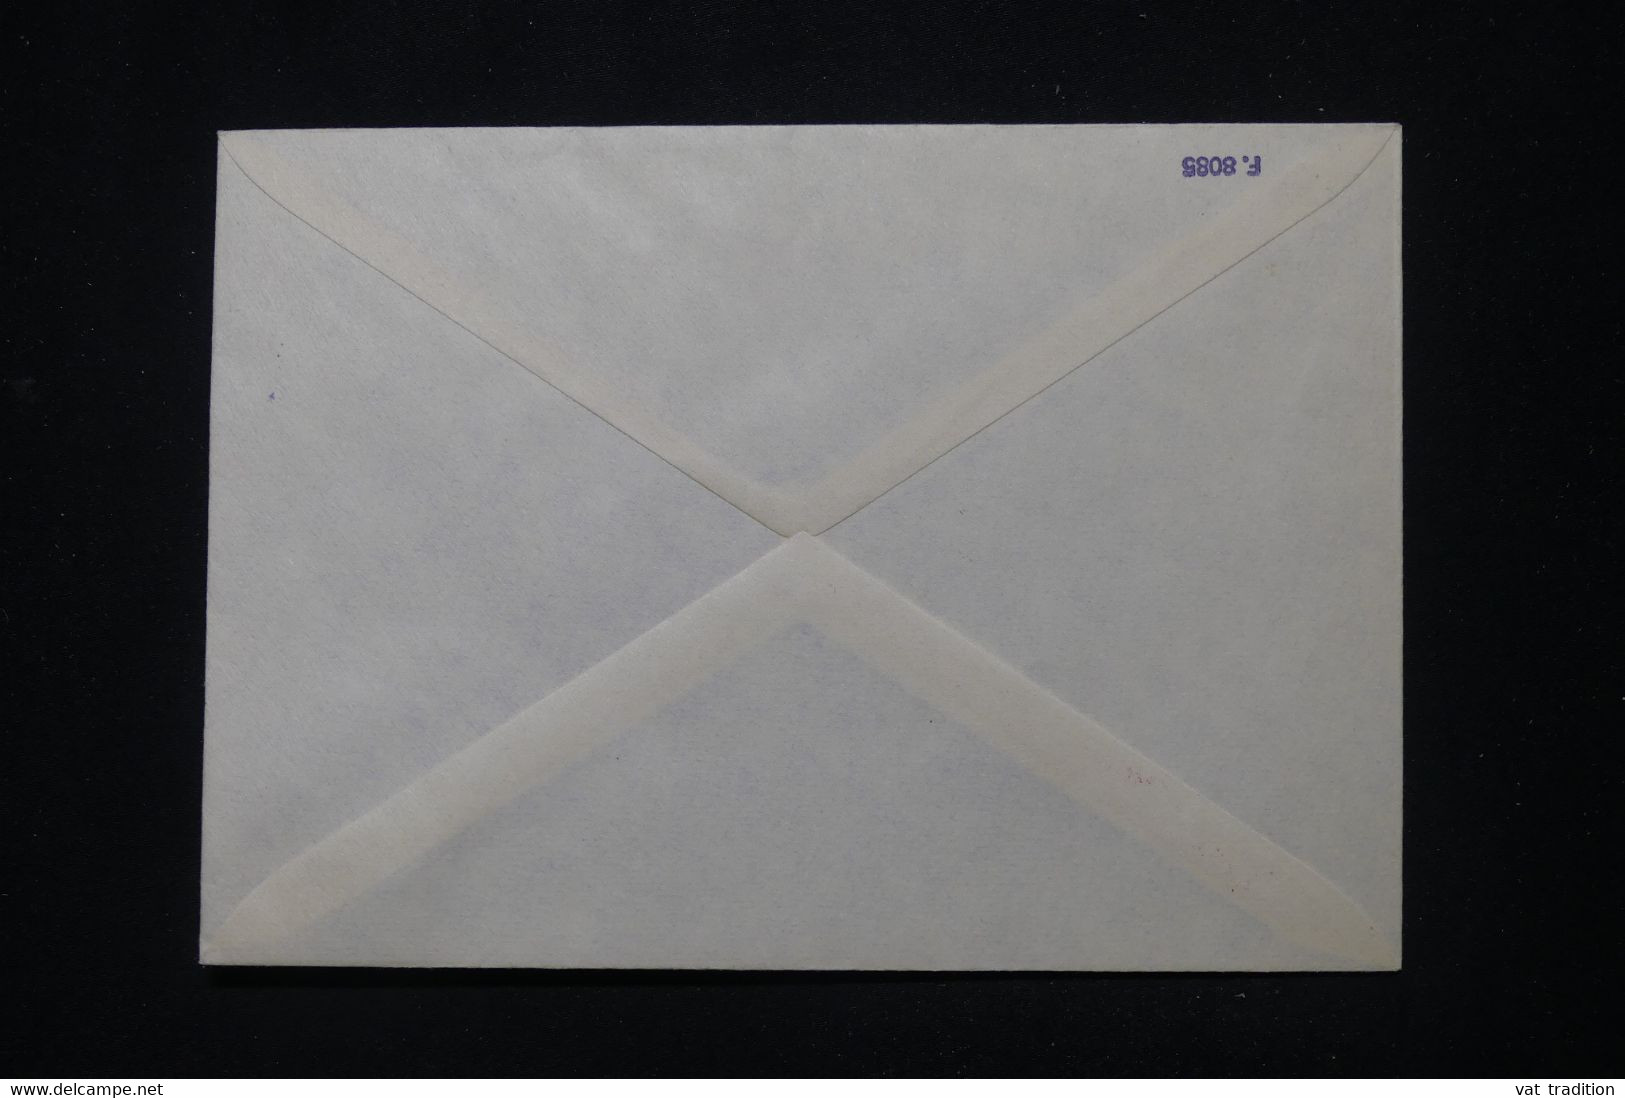 ARGENTINE - Cachet Avec Signature D'un Directeur Scientifique Sur Enveloppe En 1985, à Voir - L 112886 - Cartas & Documentos